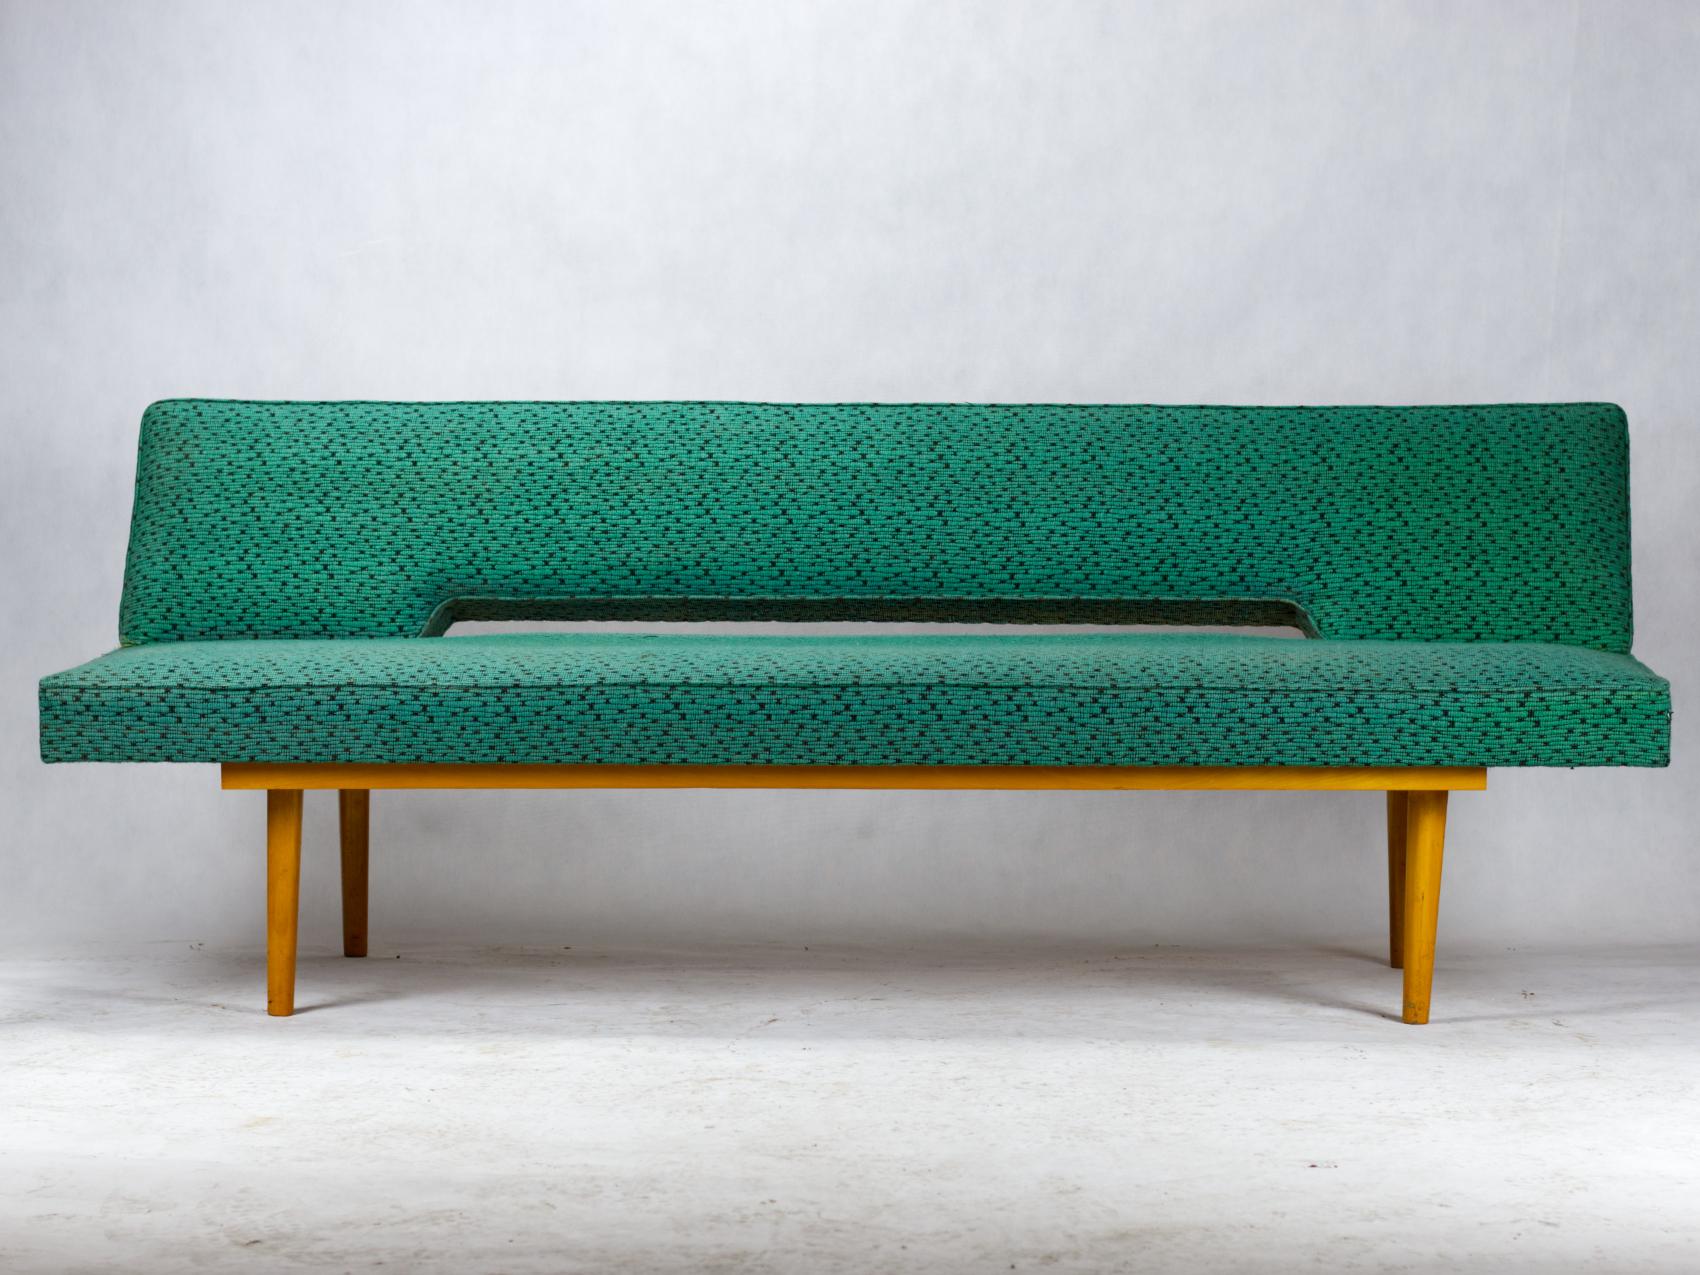 Ce canapé a été conçu par Miroslav Navratil dans les années 1960 pour Interier Praha, en Tchécoslovaquie. Il présente un cadre en hêtre avec le tissu vert d'origine. Il se replie facilement pour former un lit de 90 cm de large.
État original.